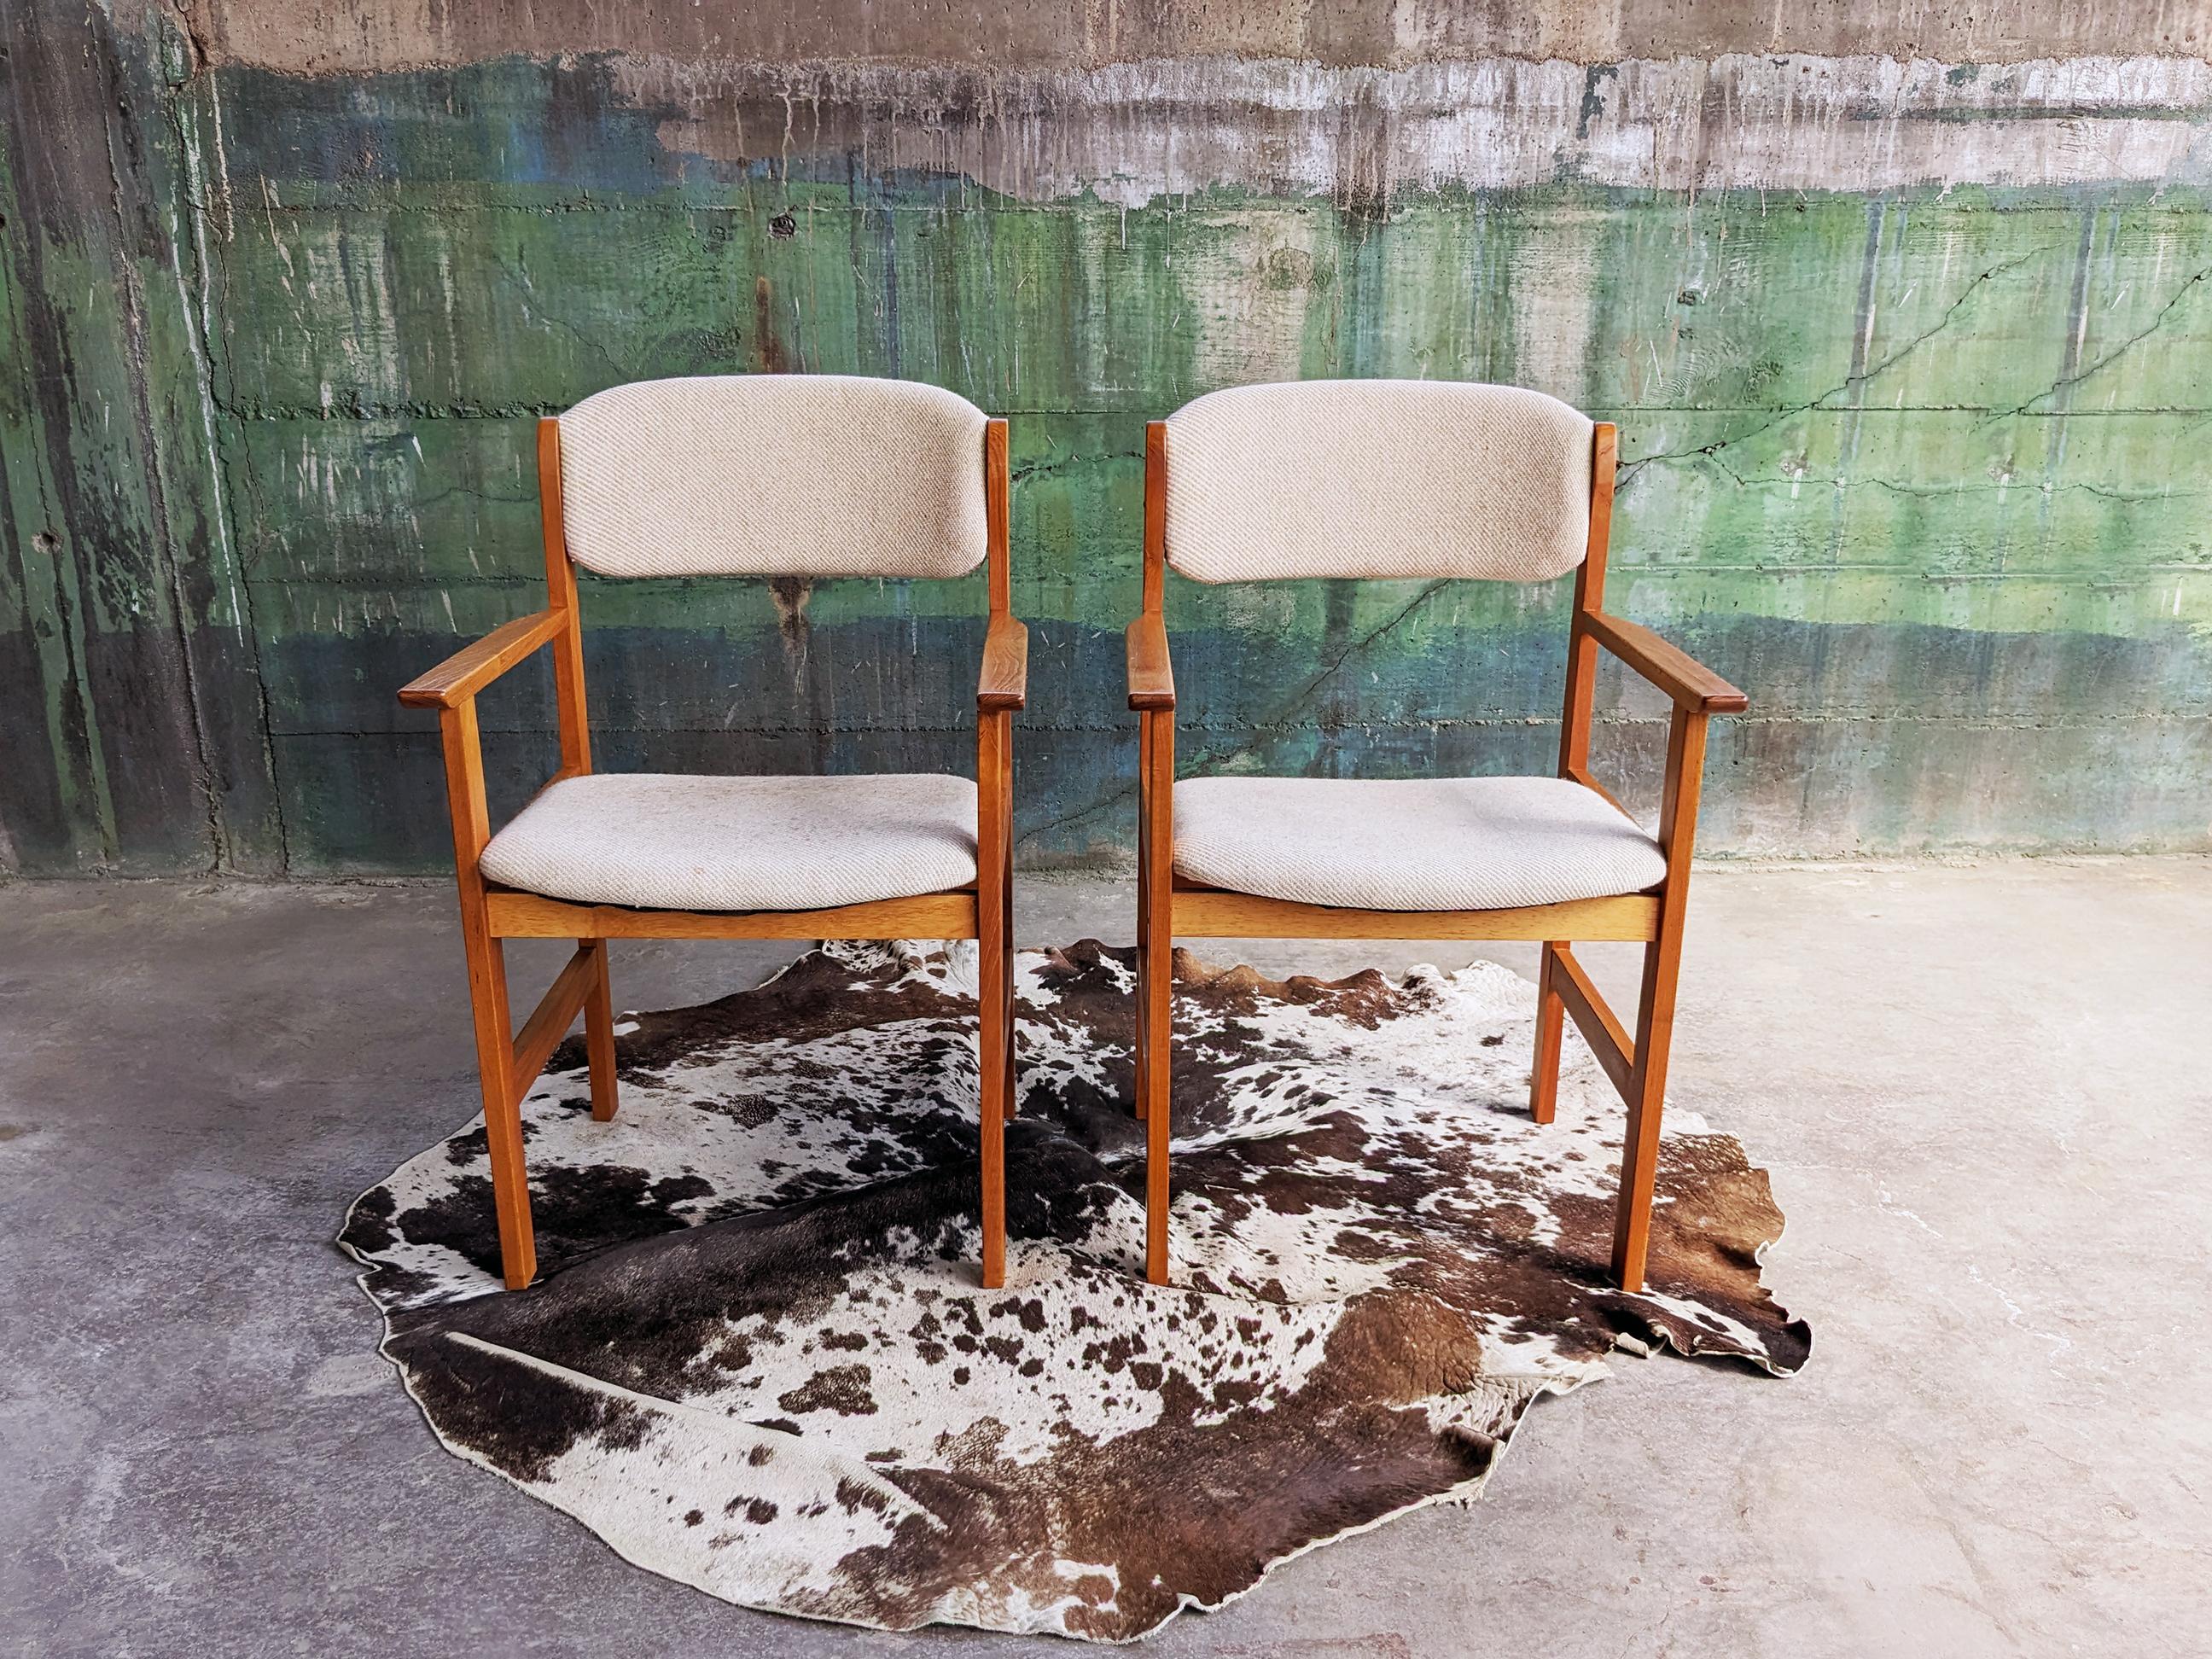 Paire de chaises en teck modernes danoises du milieu du siècle par Benny Linden Design.

Elle se compose d'un cadre en teck massif au Design Modern Scandinavian minimaliste, et d'une assise et d'un dossier rembourrés en tissu de laine de couleur